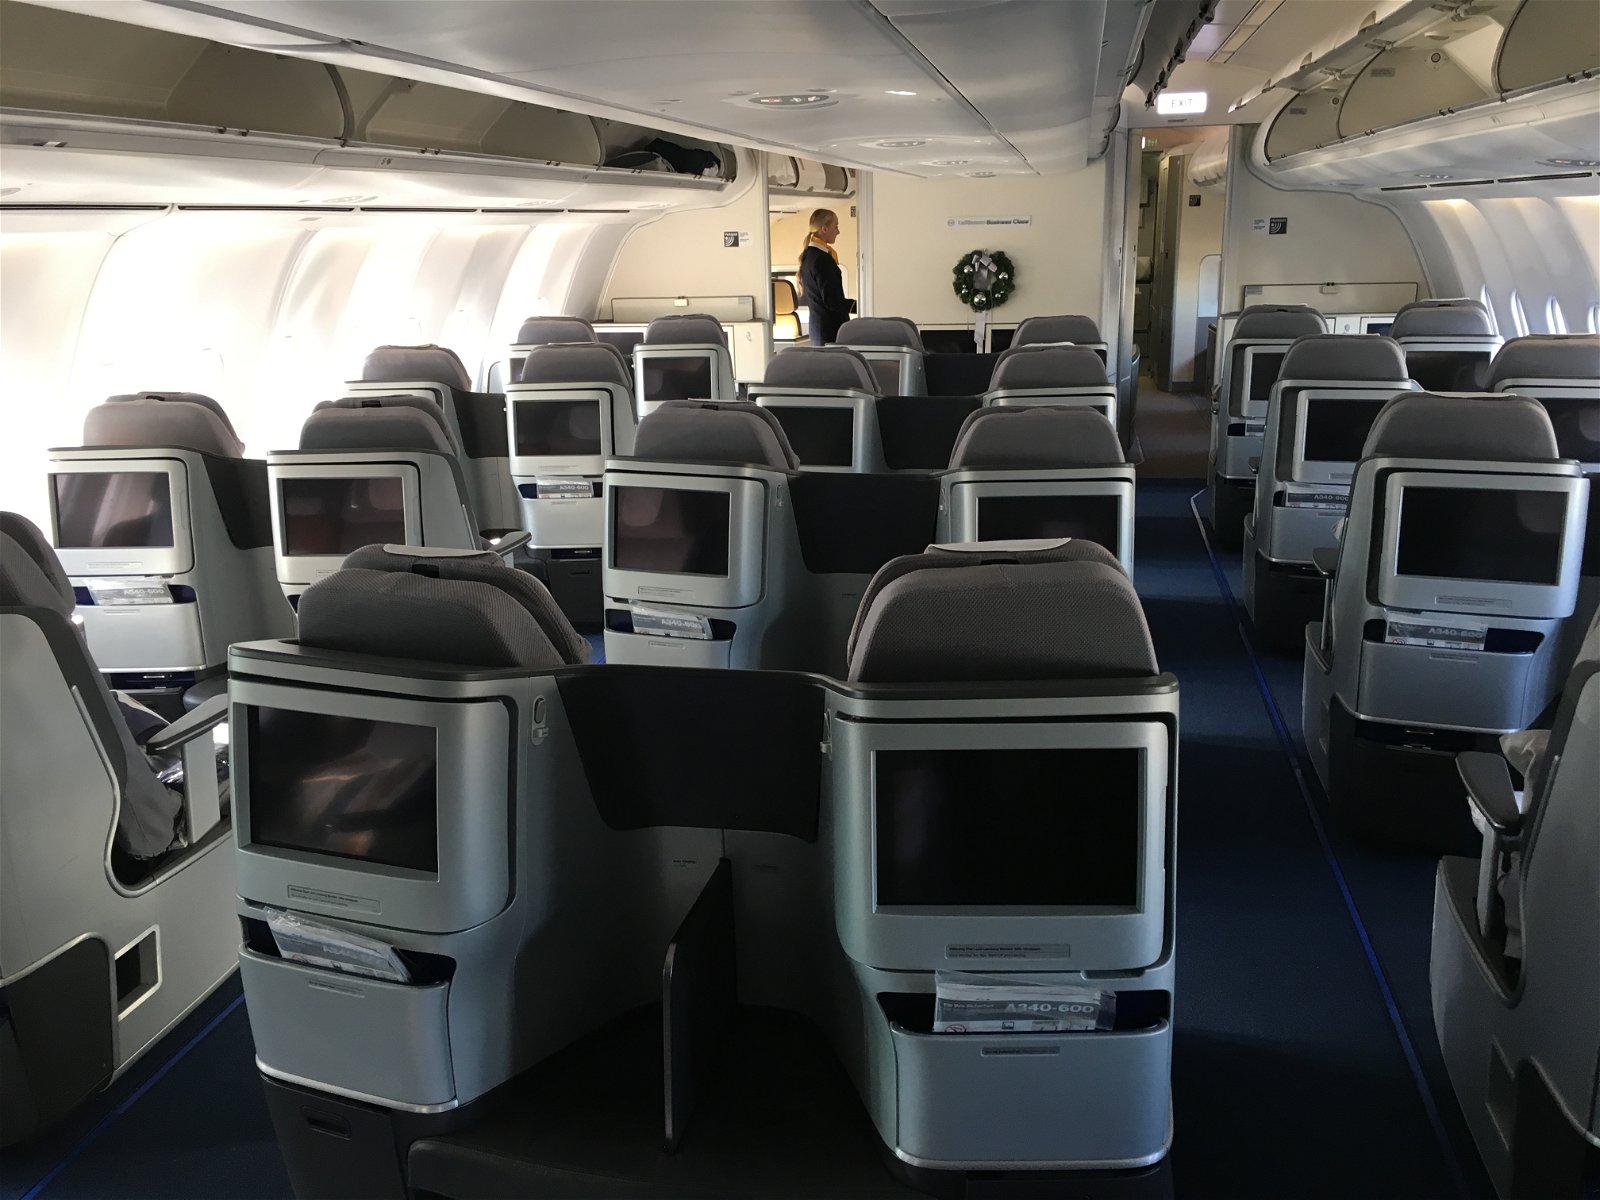 Lufthansa business class cabin 3